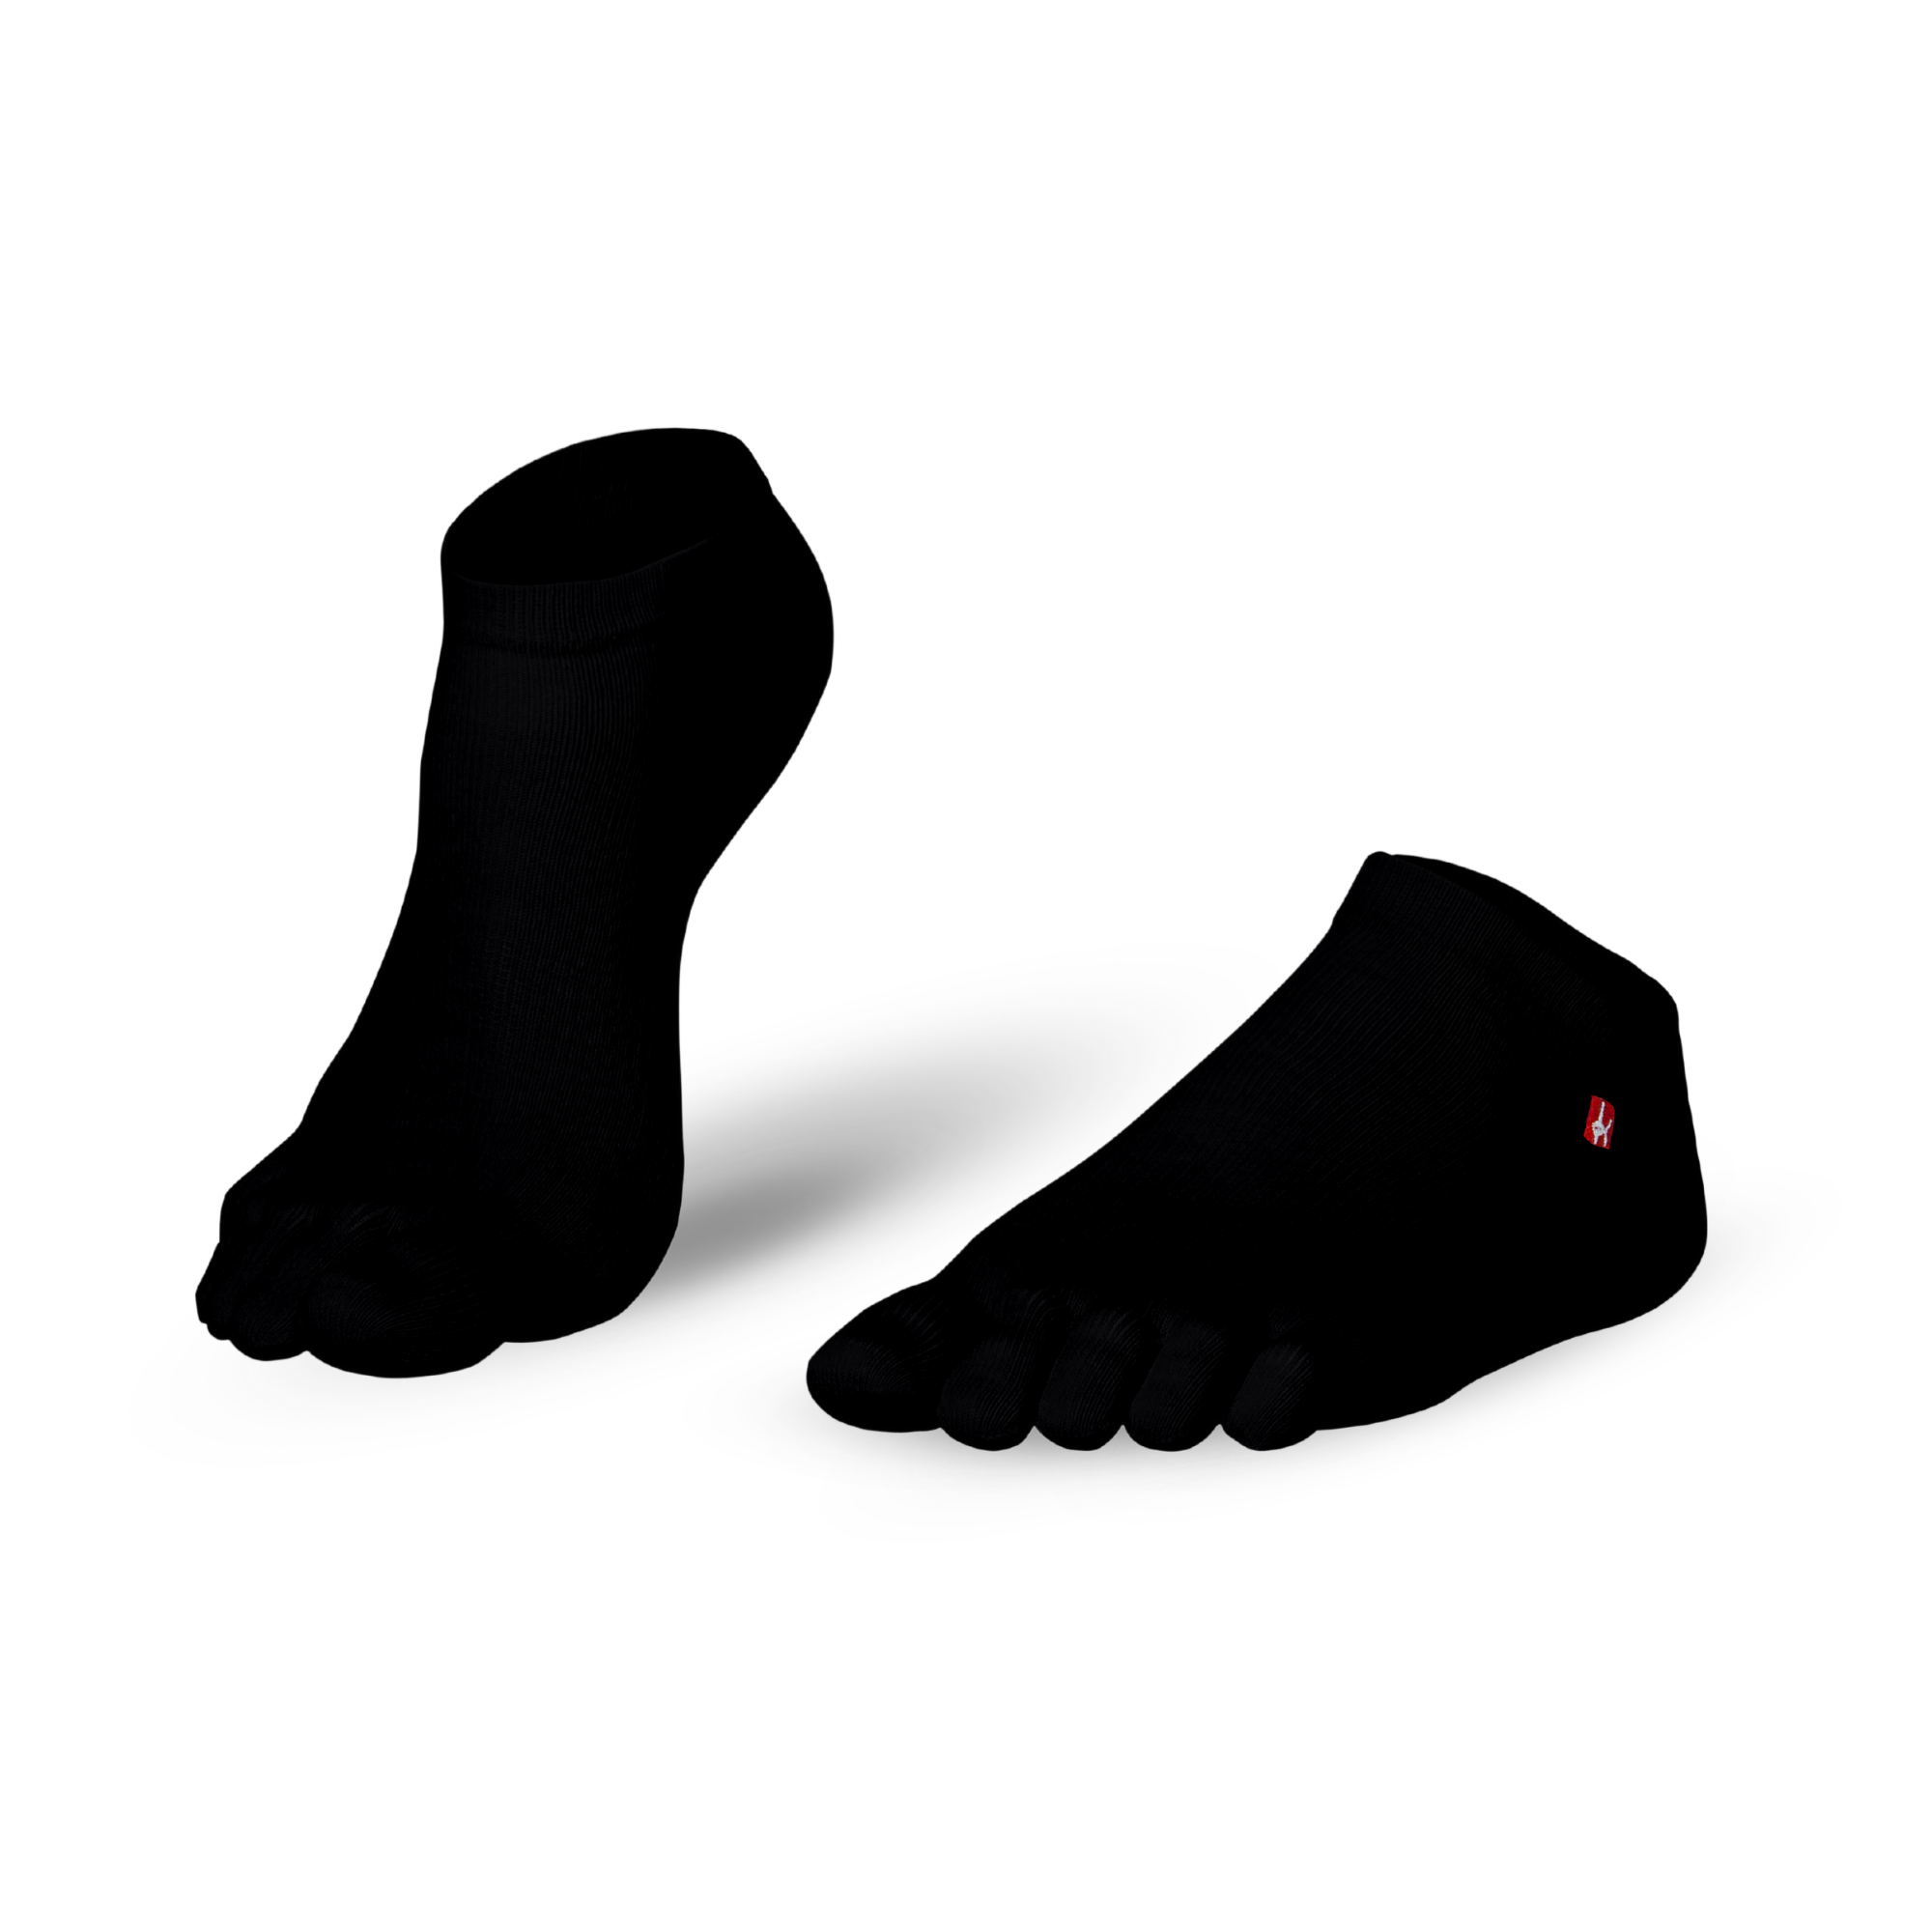 Knitido Track and Trail Ultralite chaussettes à orteils Midi en noir